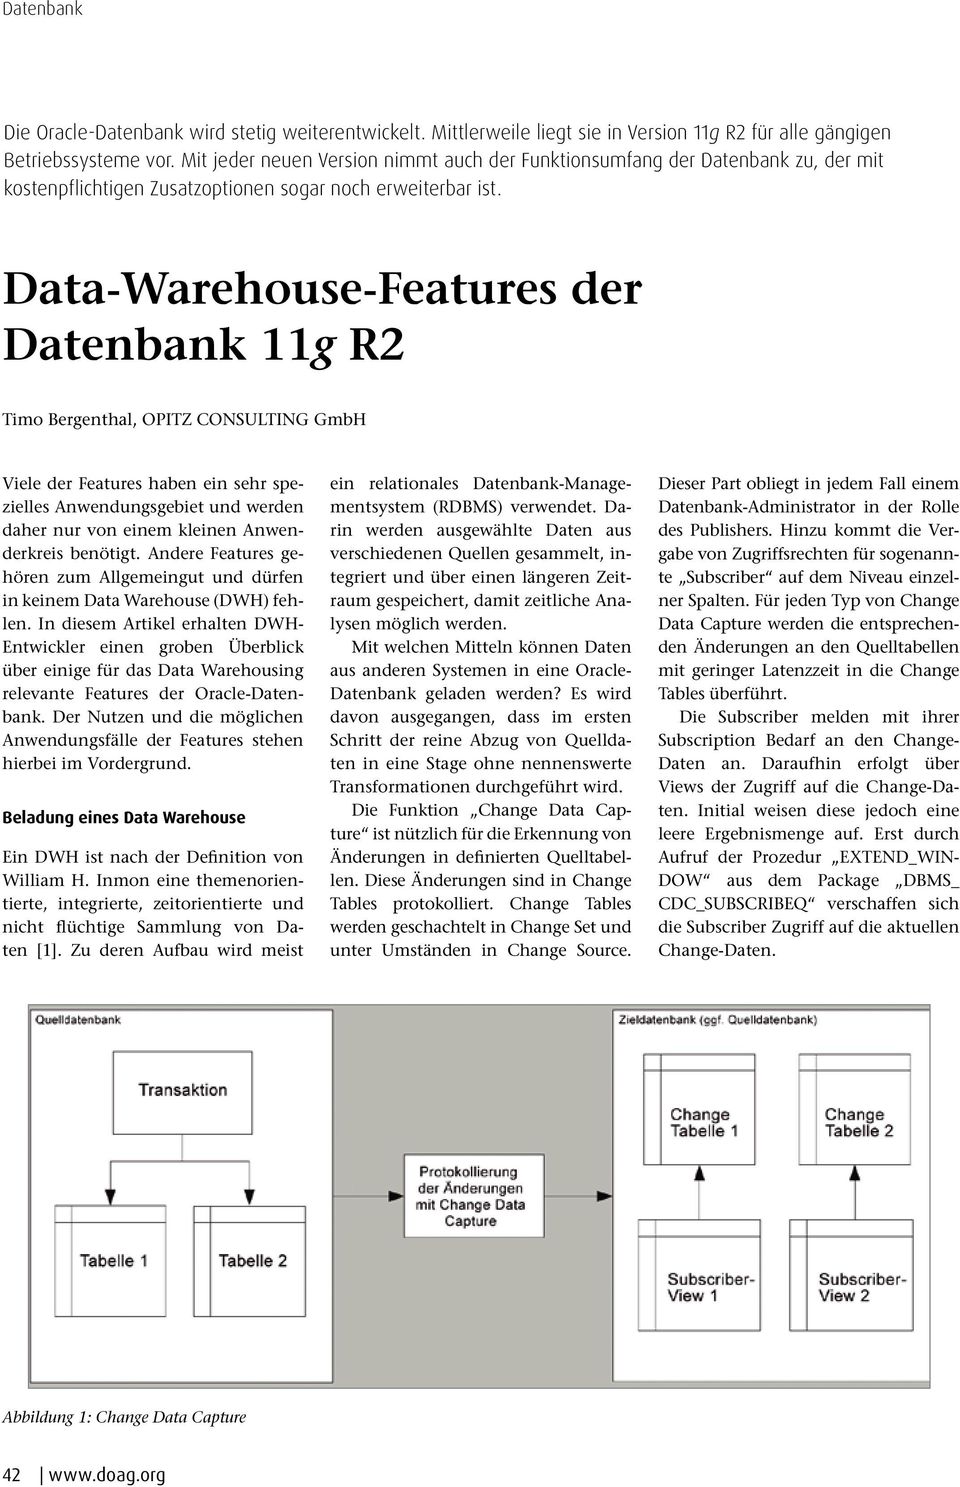 Data-Warehouse-Features der Datenbank 11g R2 Timo Bergenthal, OPITZ CONSULTING GmbH Viele der Features haben ein sehr spezielles Anwendungsgebiet und werden daher nur von einem kleinen Anwenderkreis